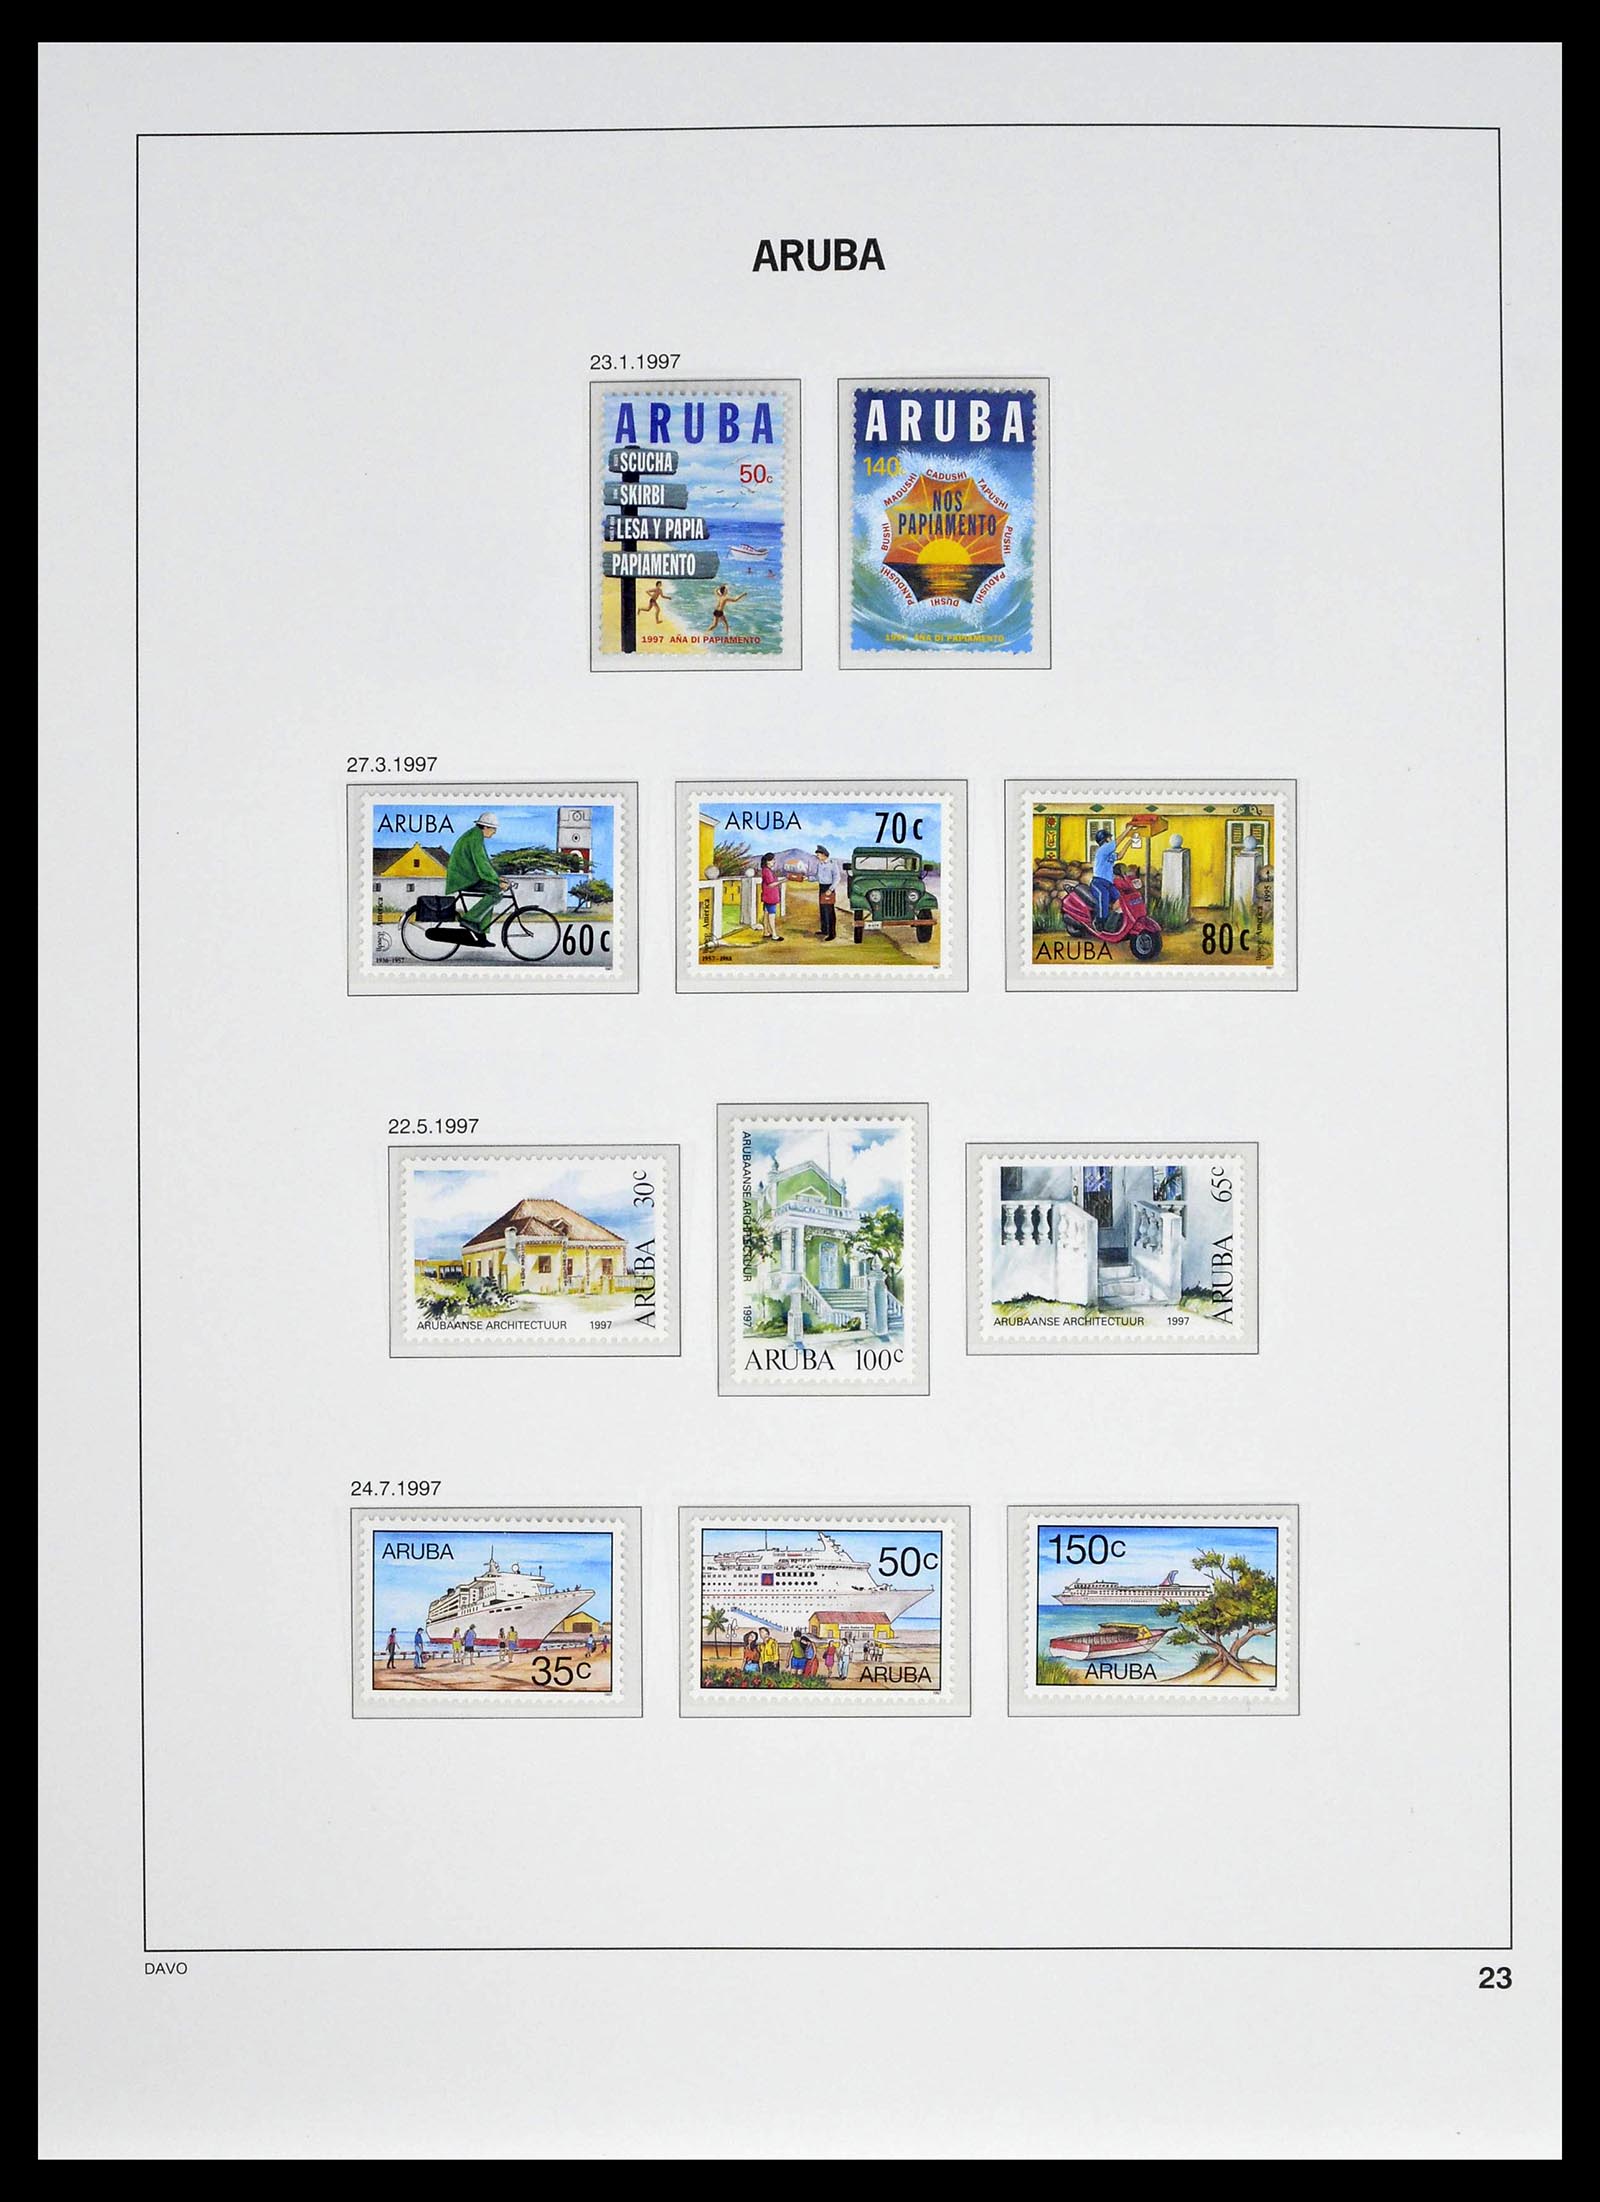 39361 0023 - Stamp collection 39361 Aruba 1986-2013.